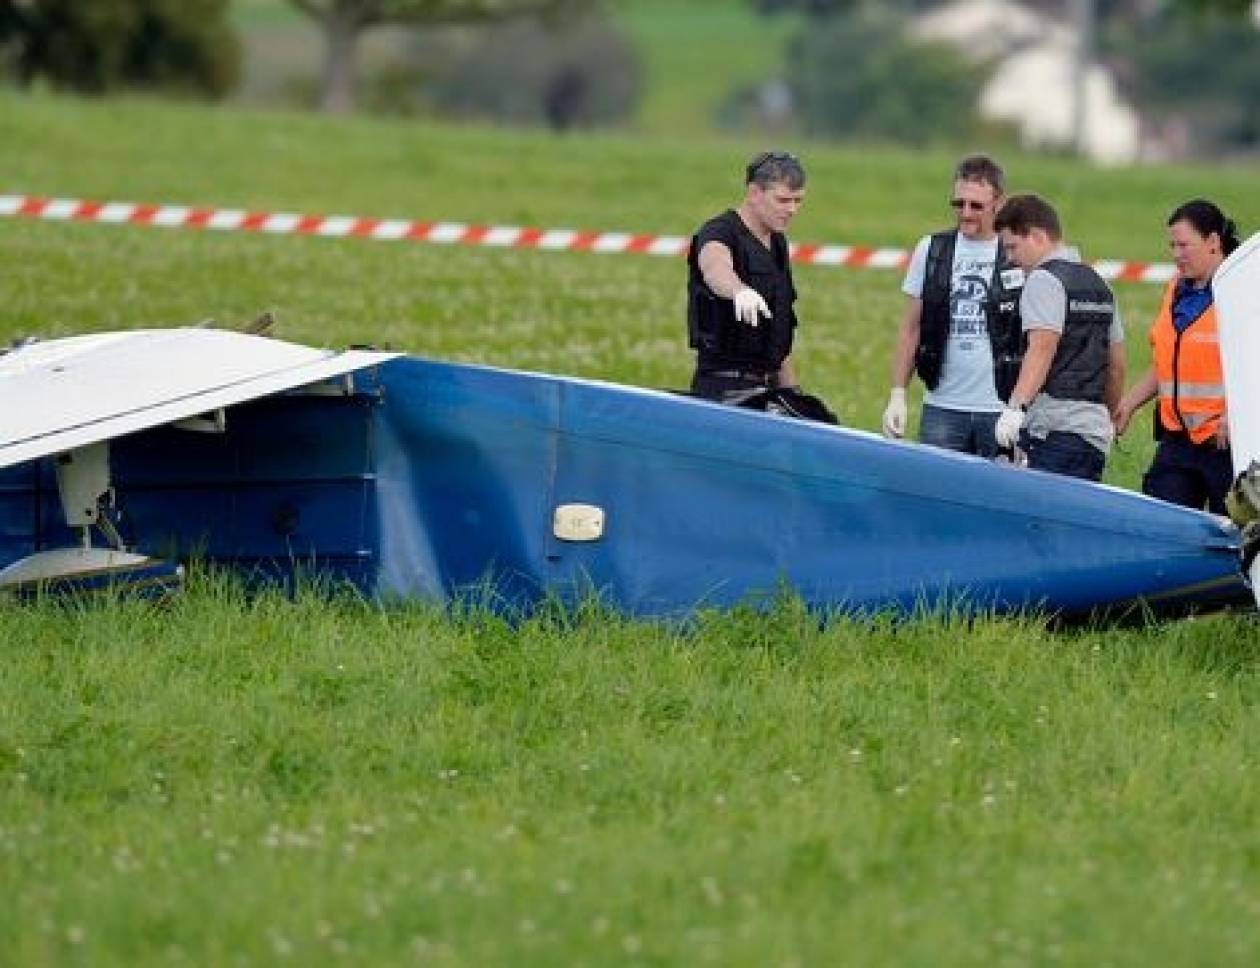 Ελβετία: Σύγκρουση δύο μικρών αεροπλάνων με 7 τραυματίες